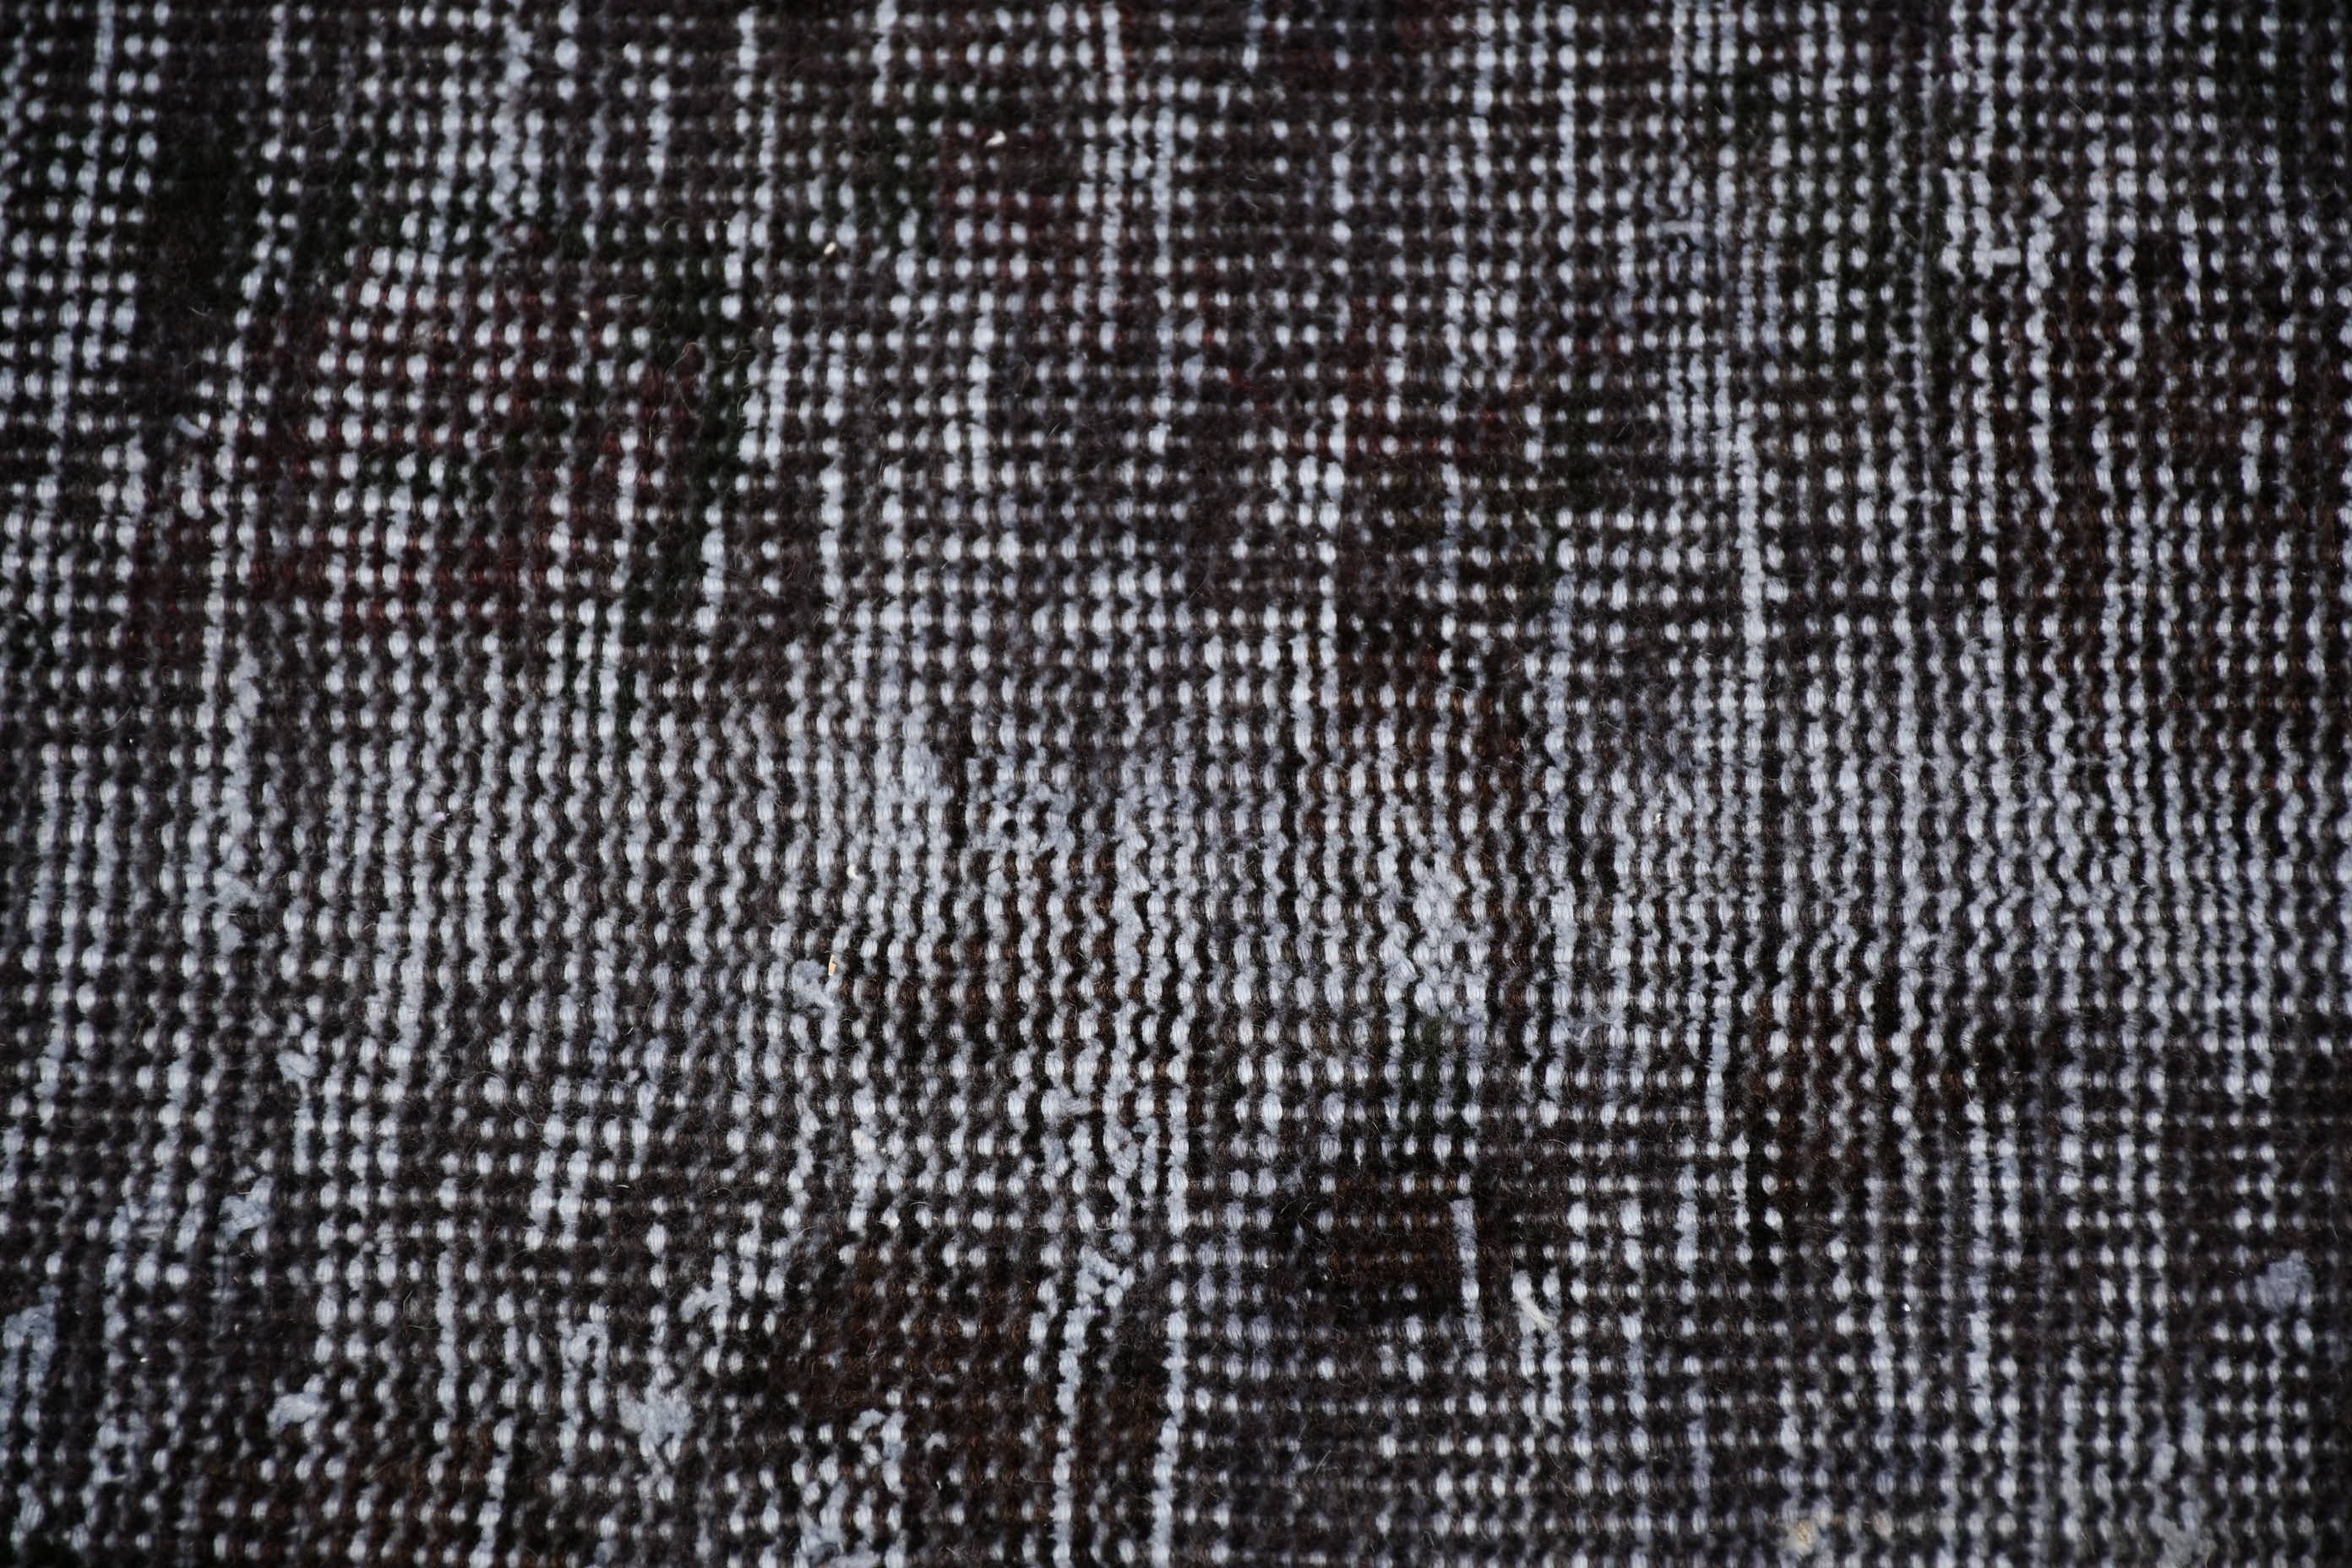 Wool Rug, Rugs for Bedroom, Oriental Rugs, Turkish Rug, 6.4x9.4 ft Large Rug, Dining Room Rug, Black Wool Rug, Vintage Rugs, Salon Rugs